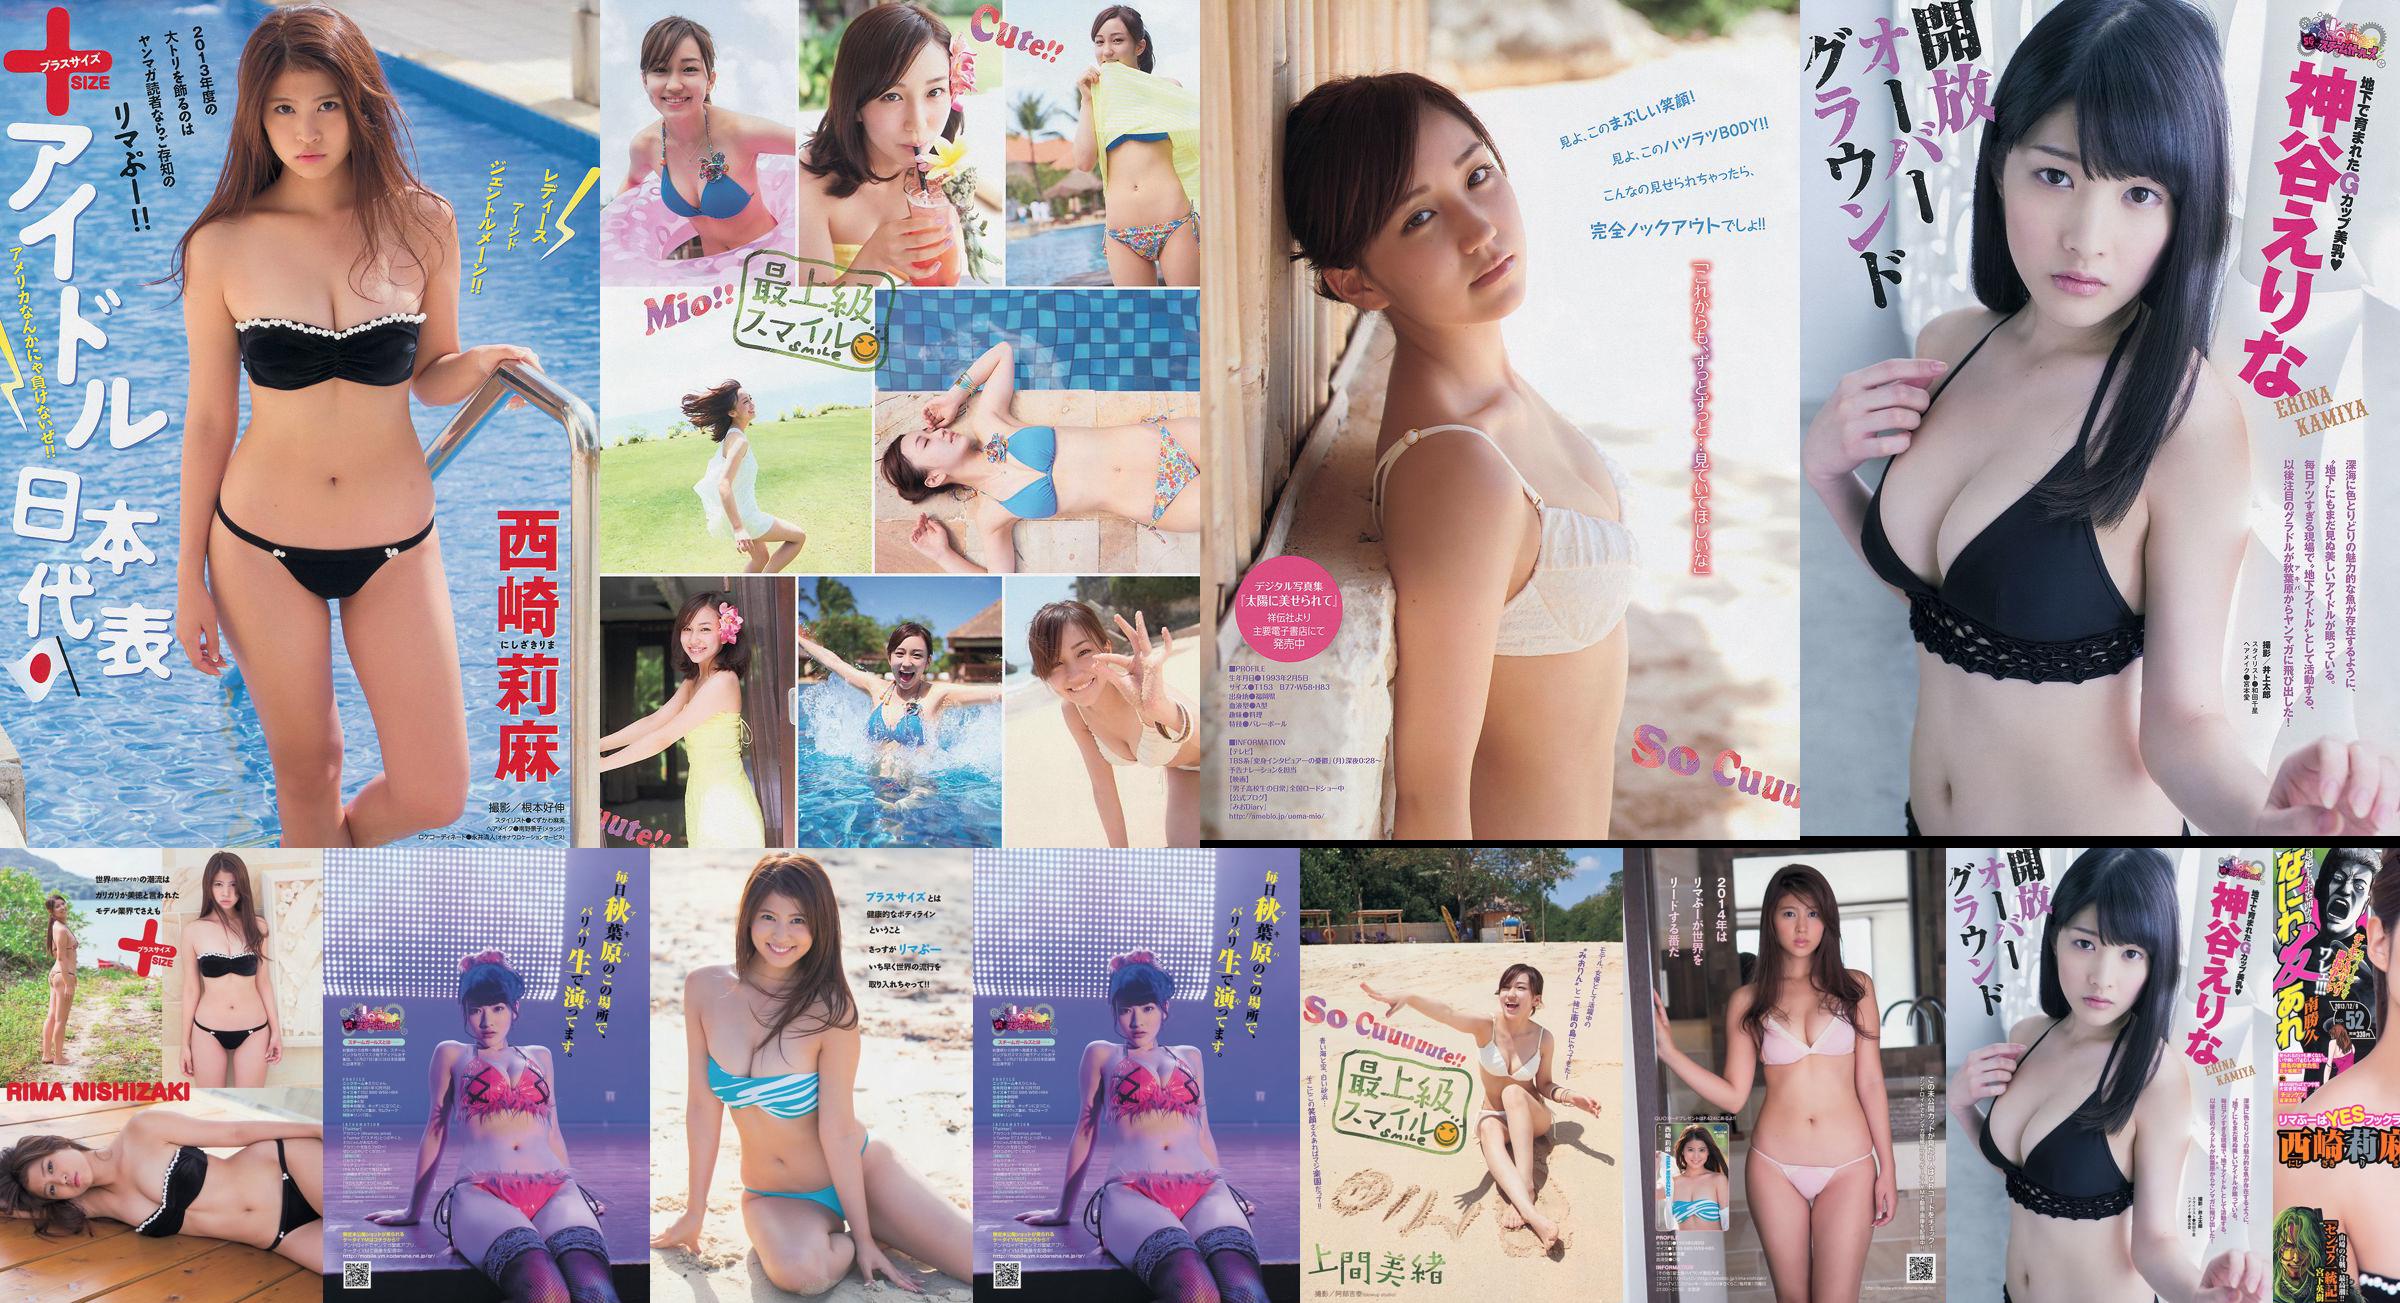 [Junge Zeitschrift] Rima Nishizaki Mio Uema Erina Kamiya 2013 Nr. 52 Foto Moshi No.0fb822 Seite 3